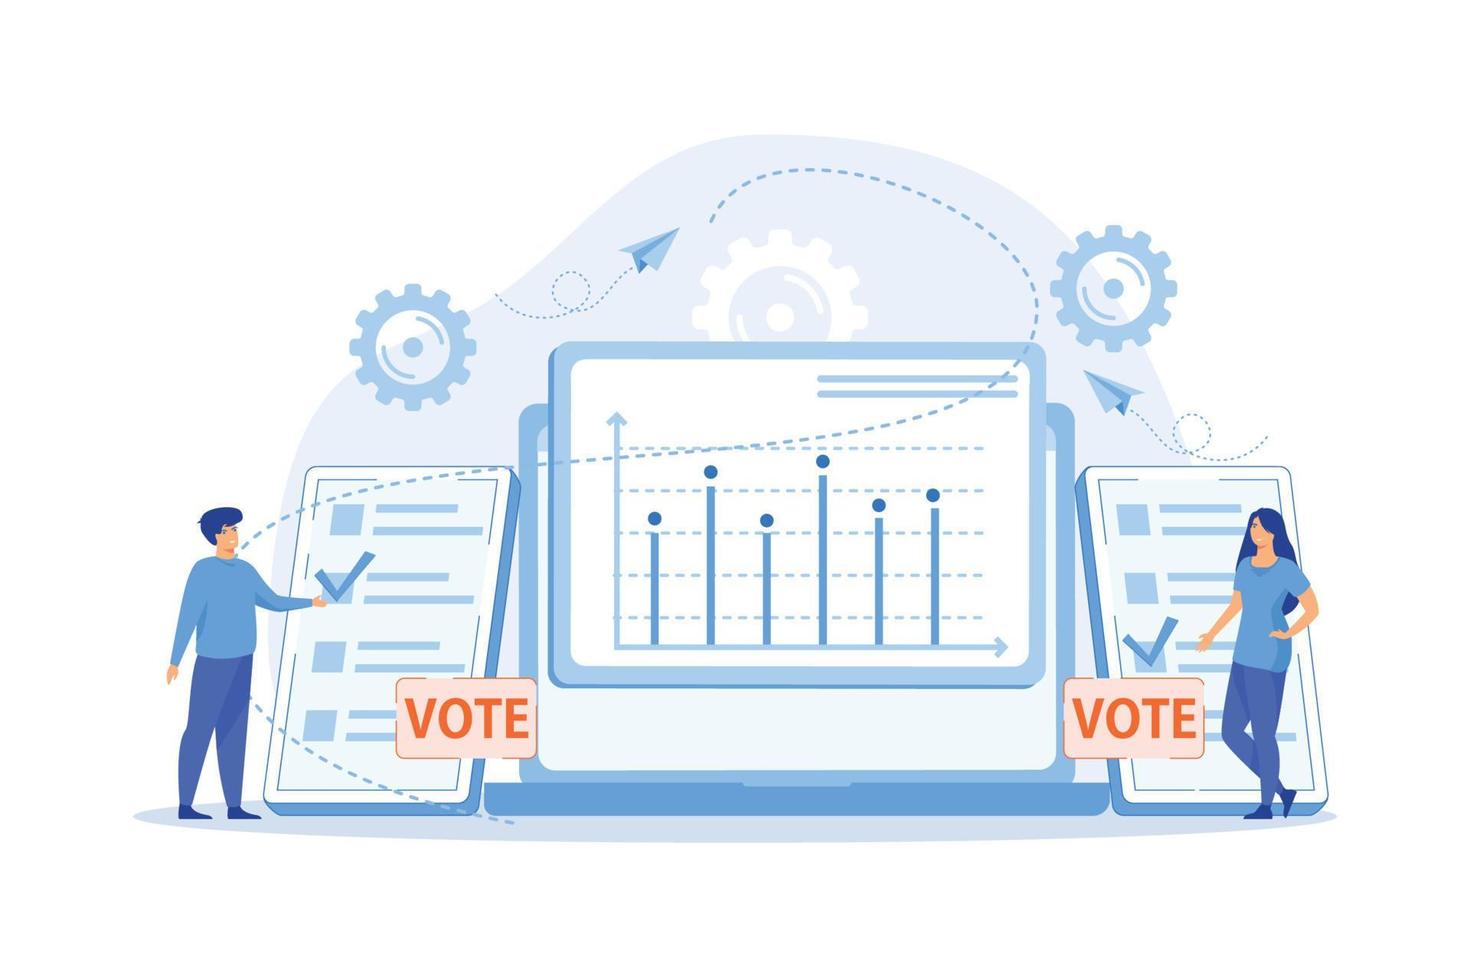 elecciones en línea. elección de los votantes. electorado expresando su opinión. votación electrónica, sistema de votación, concepto de tecnología de gobierno en línea. ilustración moderna de vector plano